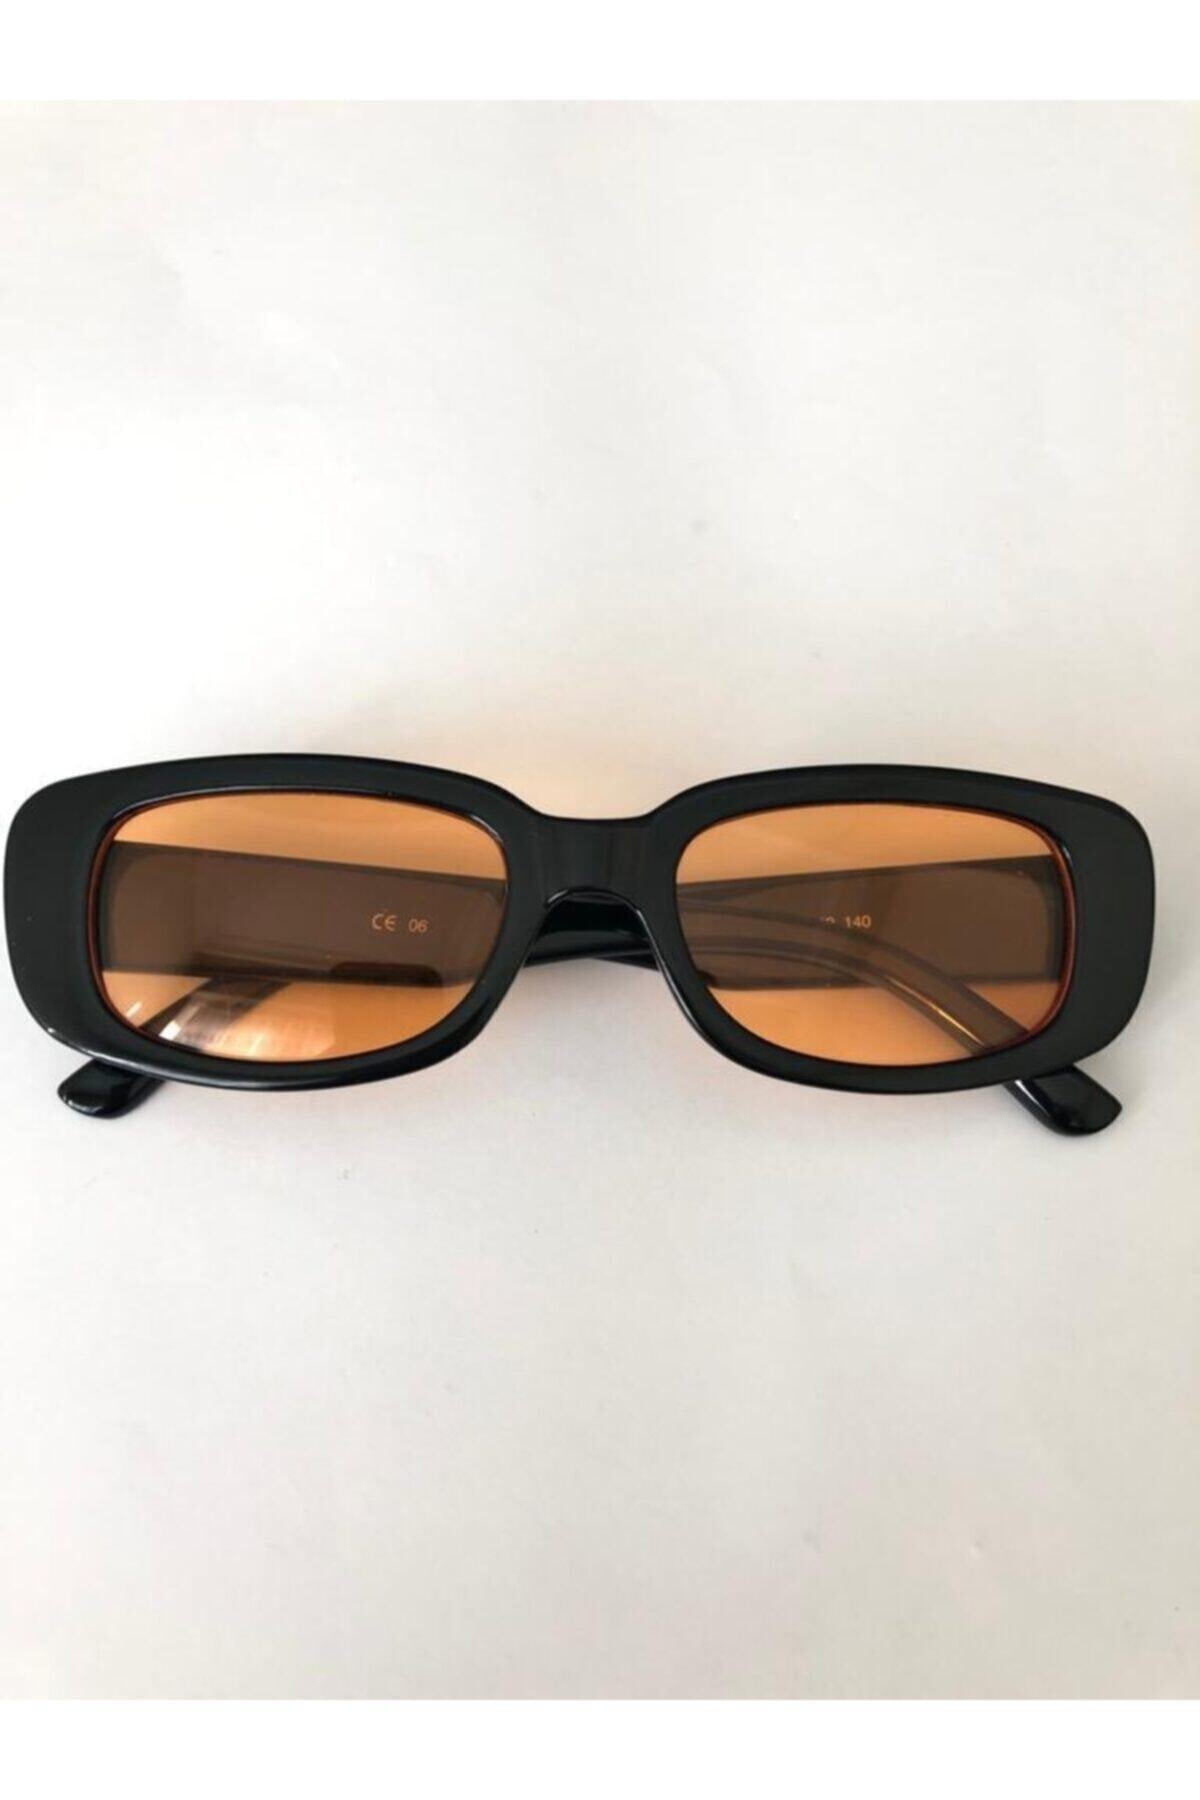 Unisex Orange Black Square Rectangle Vintage Retro Sunglasses